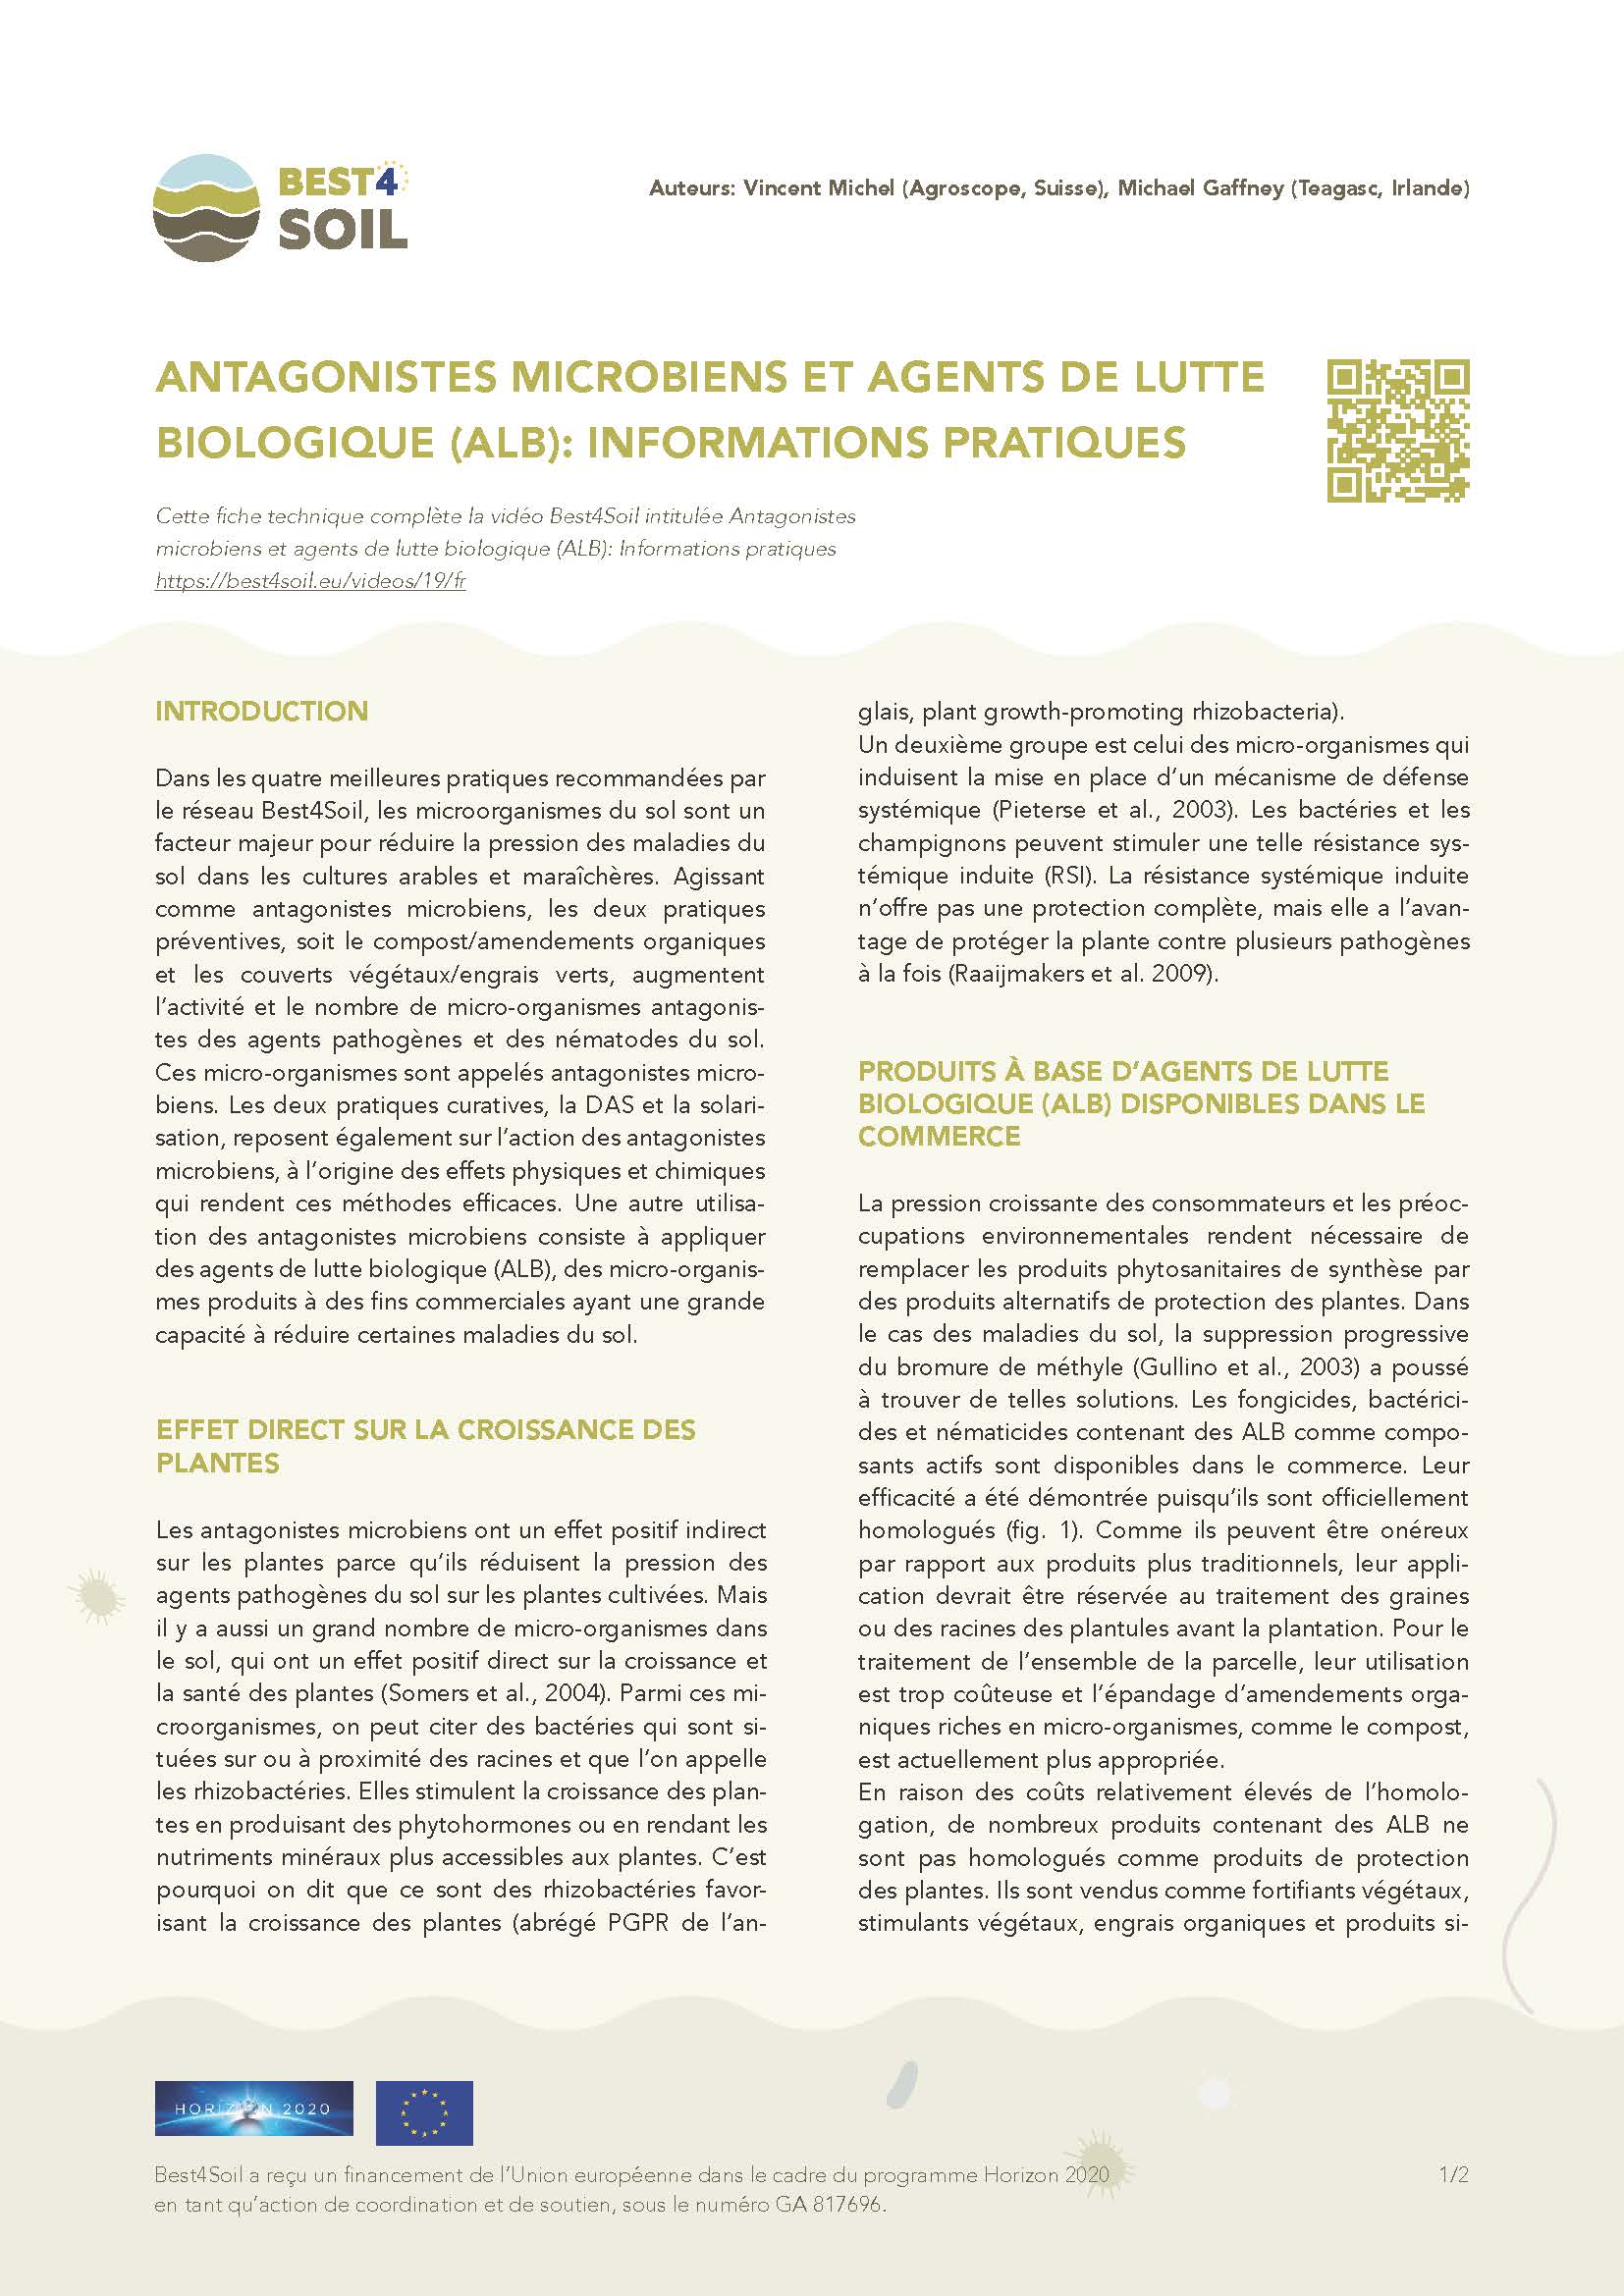 Microbiële antagonisten & bca: Praktische informatie (Best4Soil Factsheet)